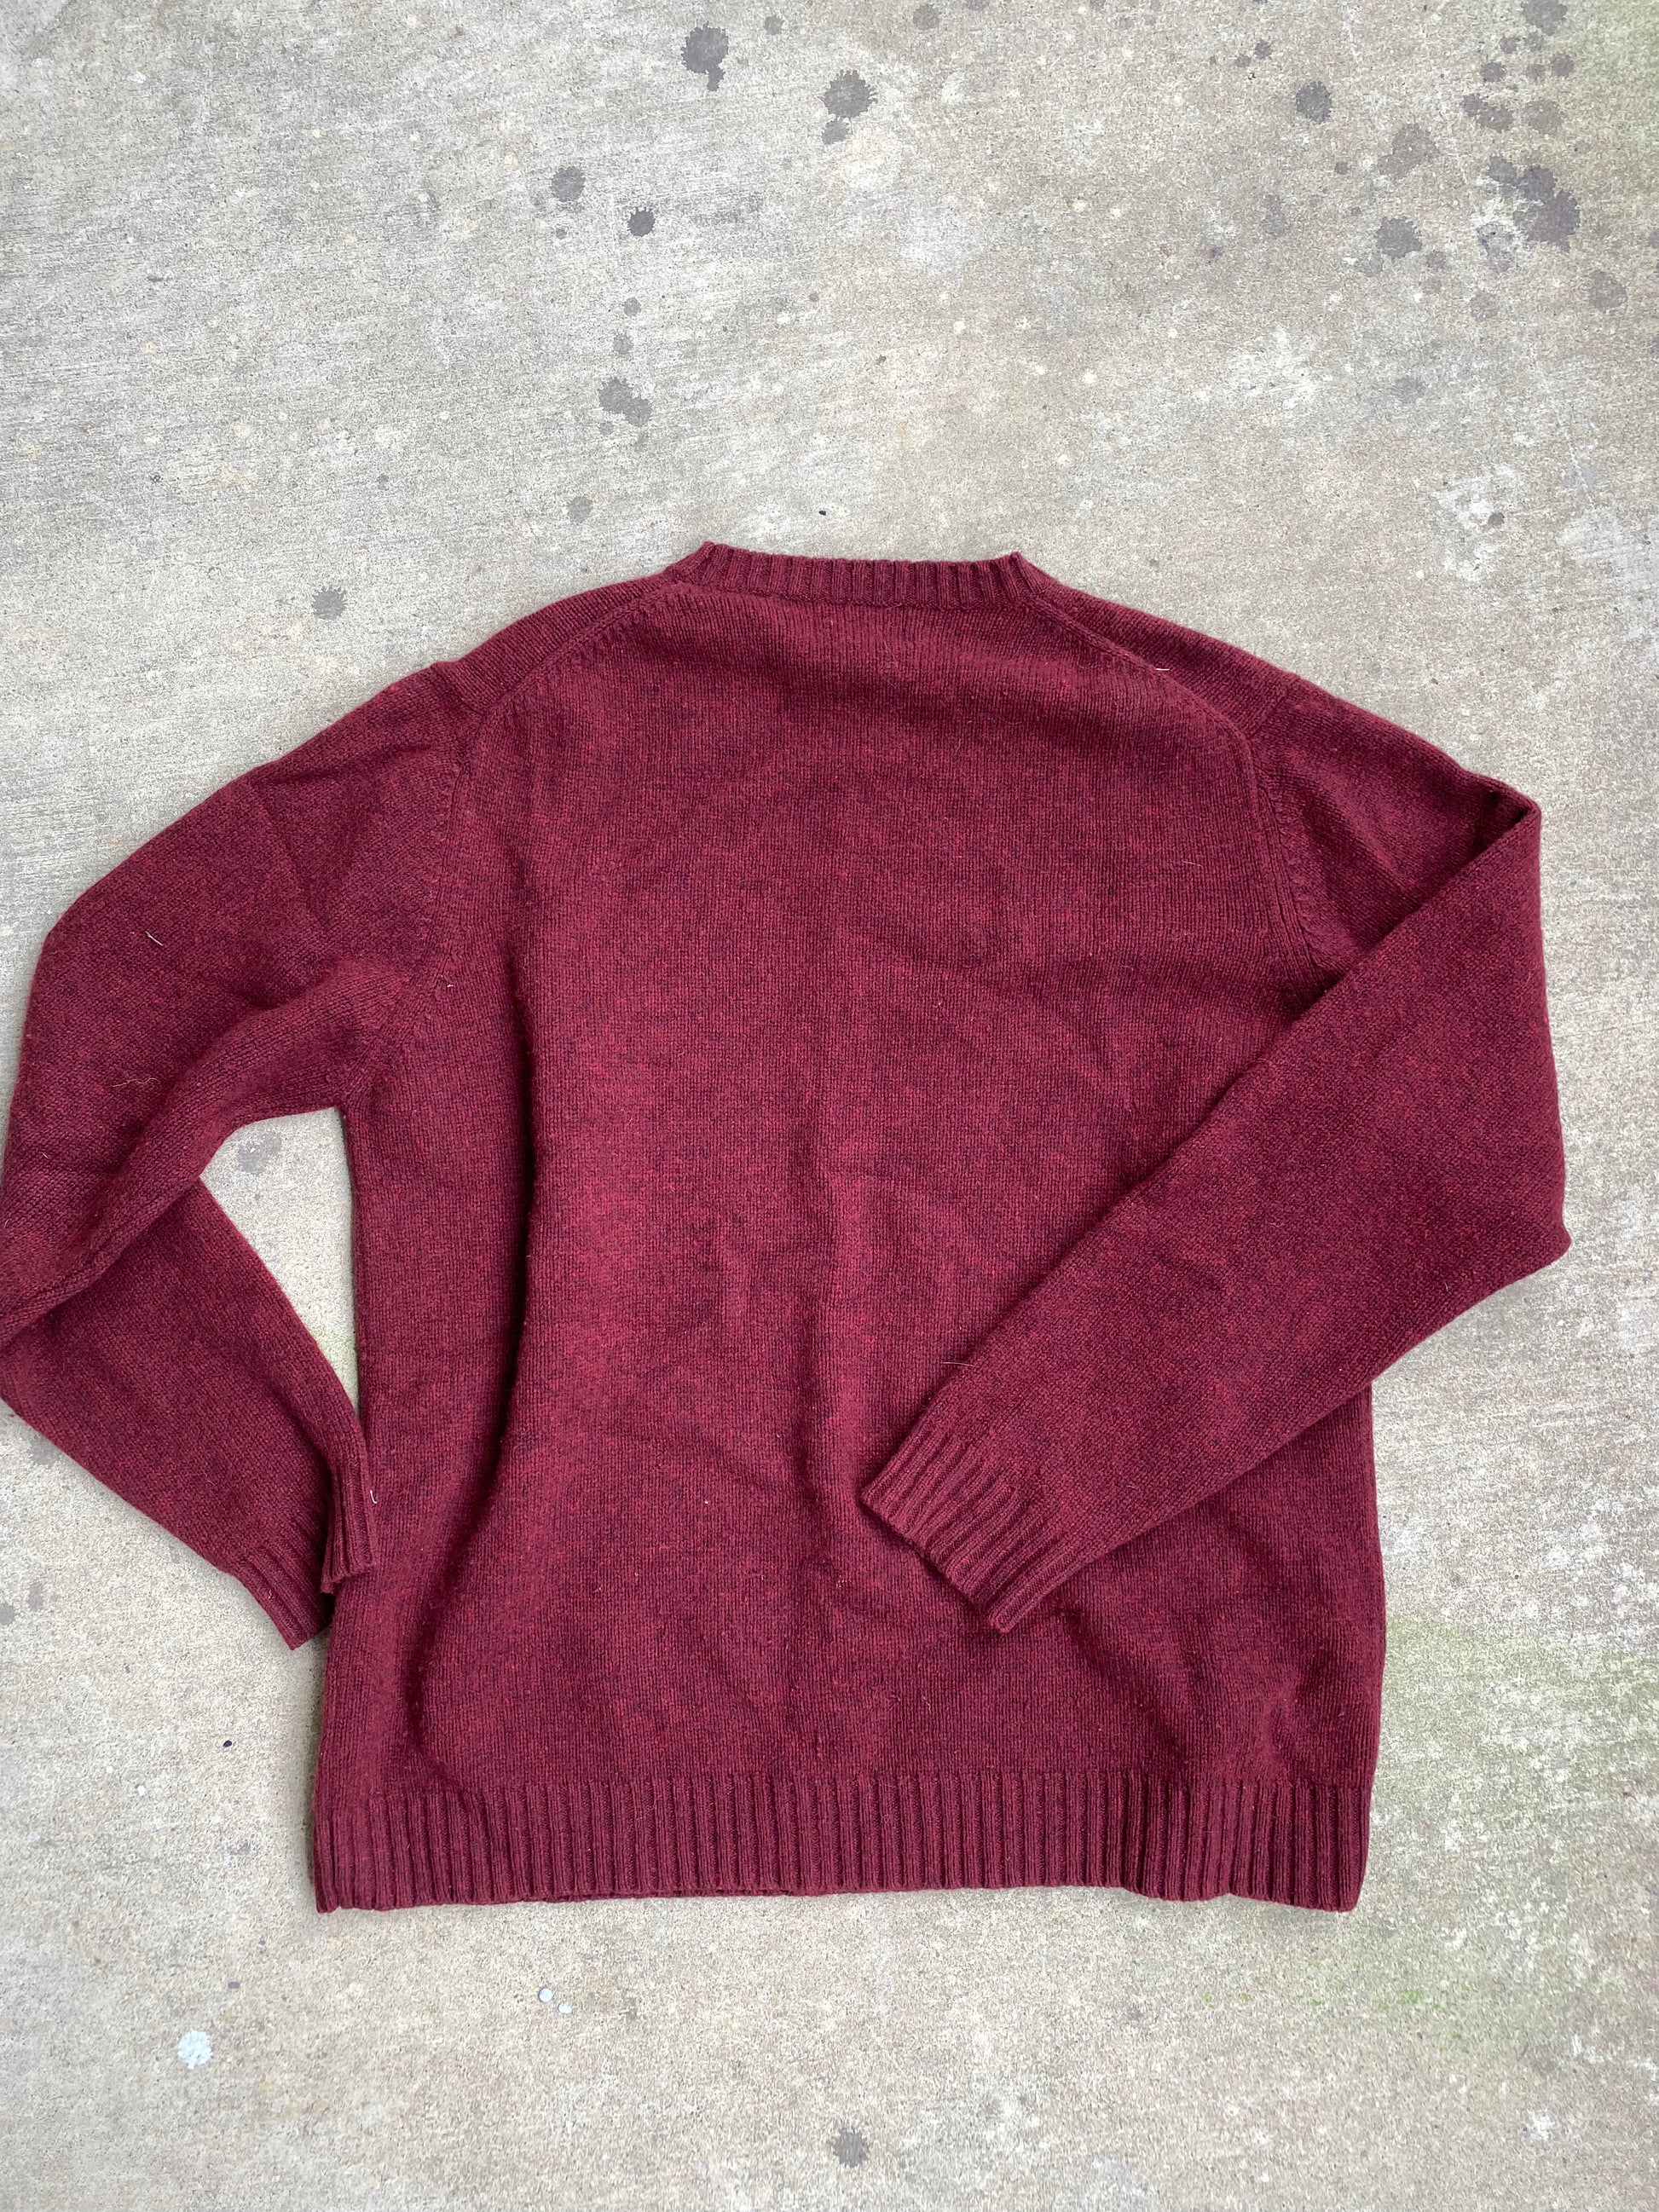 Eddie Bauer Wool Red Sweater - Brimm Archive Wardrobe Research